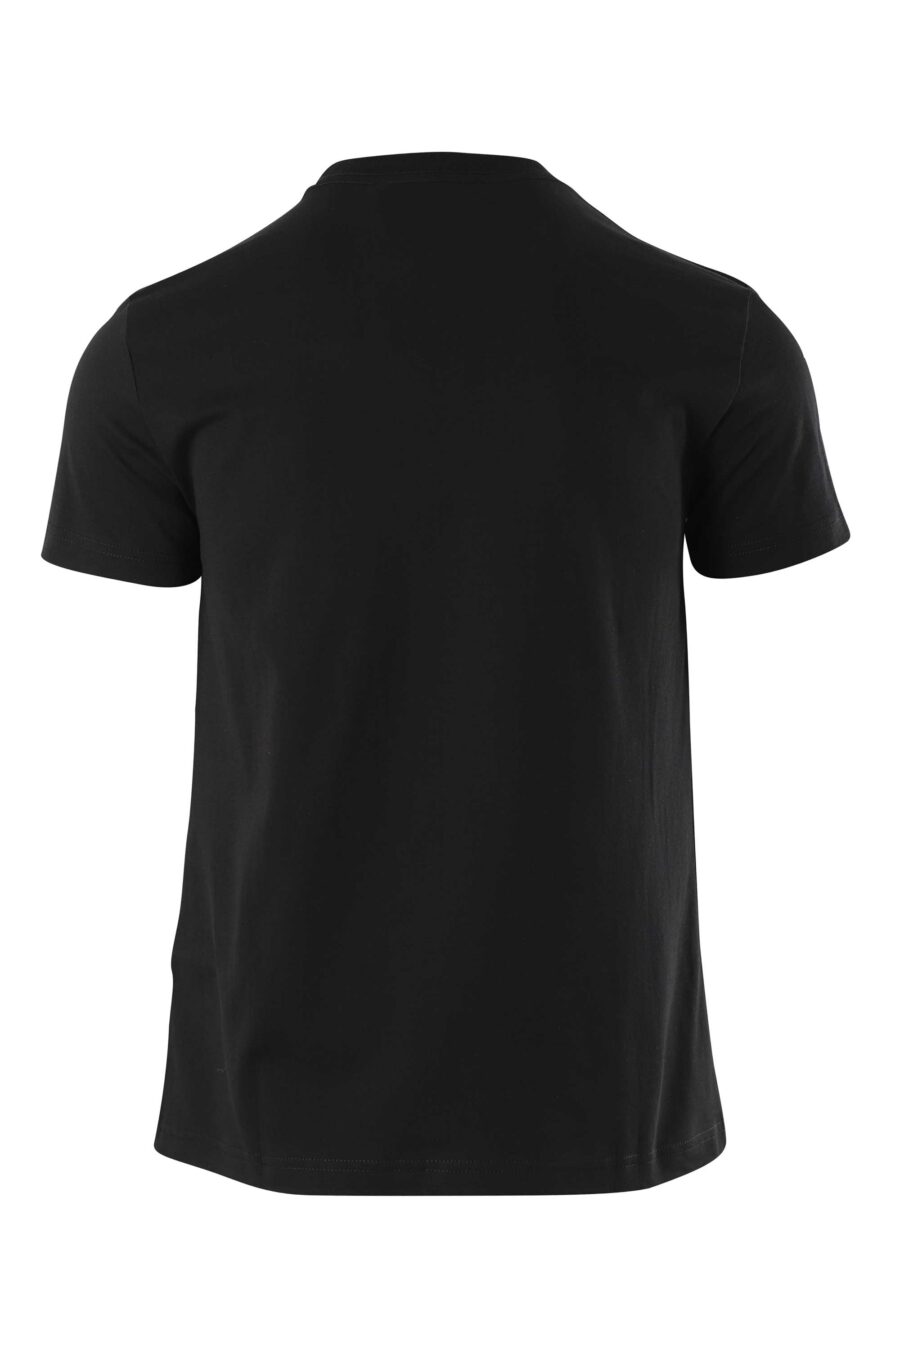 Camiseta negra con maxilogo dorado - 8052019318616 2